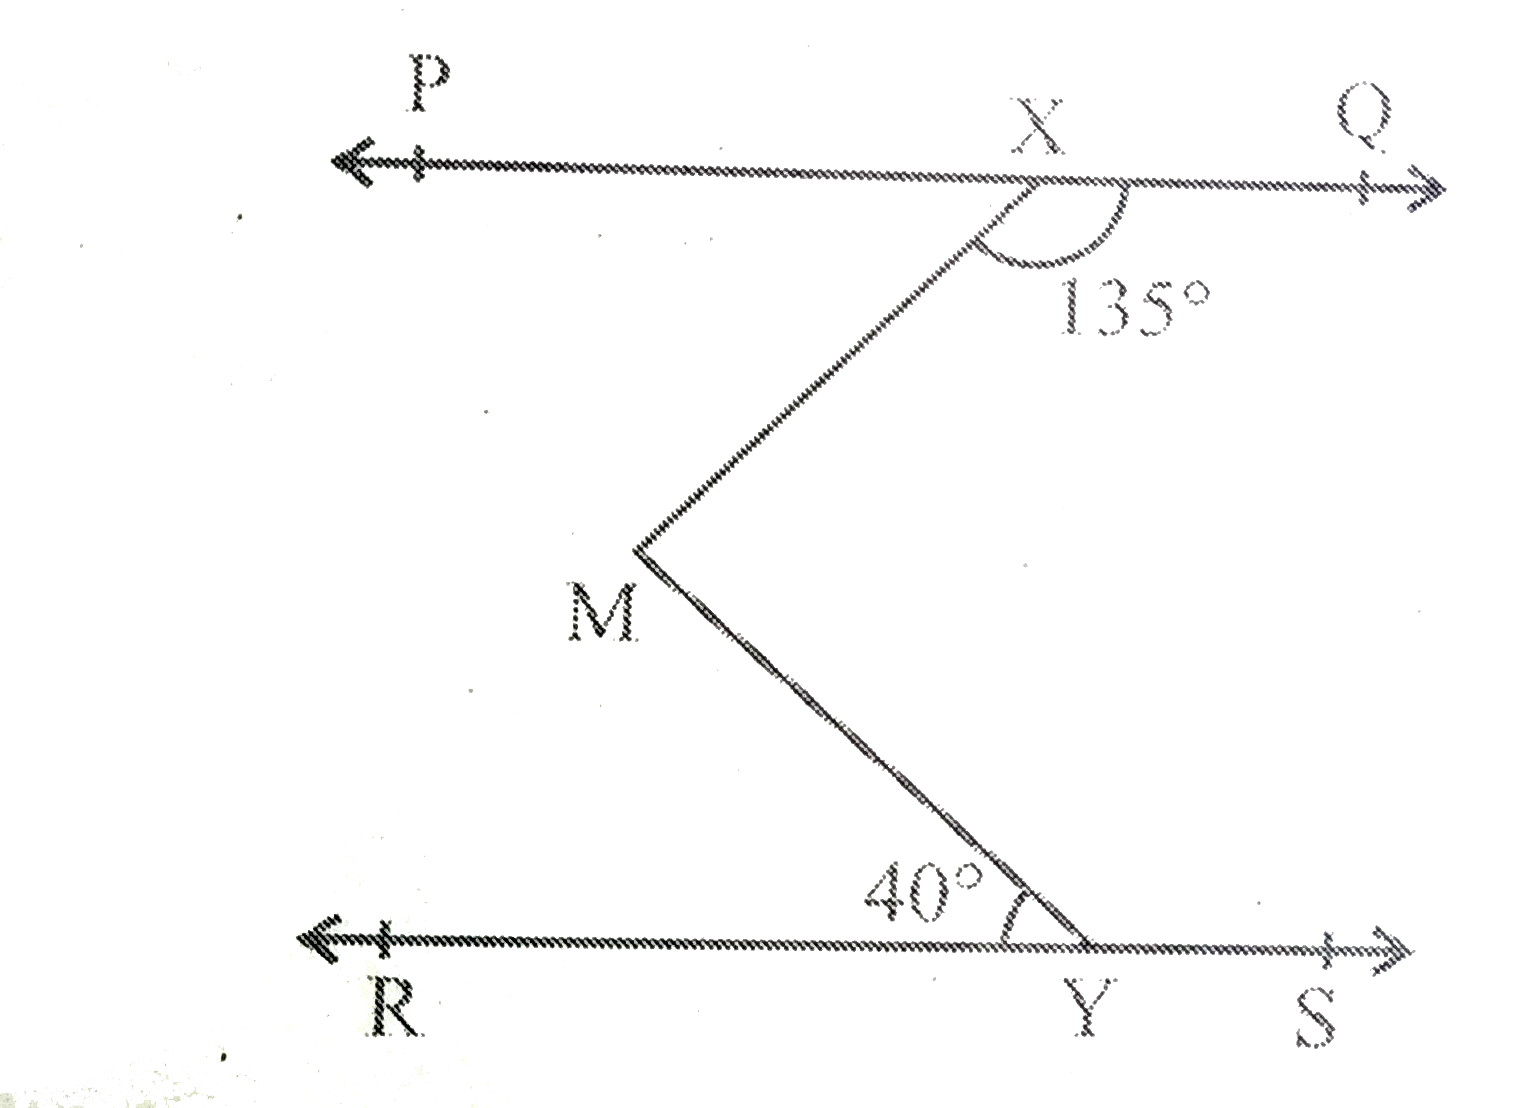 आकृति 6.24 में यदि  PQ||RS, angle MXQ=135^(@)  और angle MYR=40^(@)  है , तो angle XMY  ज्ञात कीजिये |